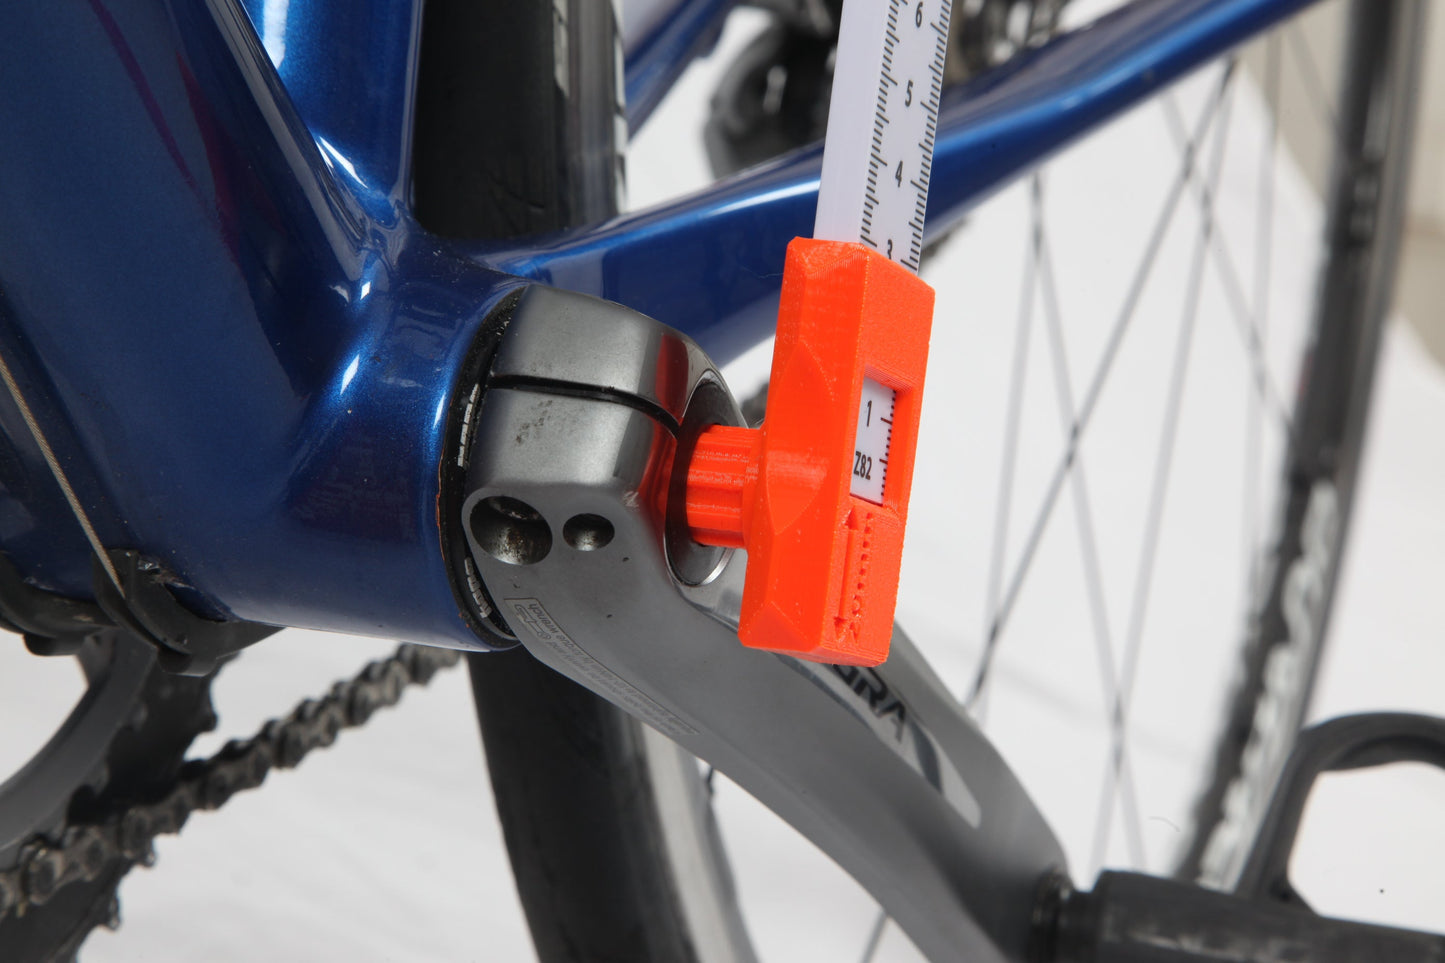 Bike Measurement and setup tool V5